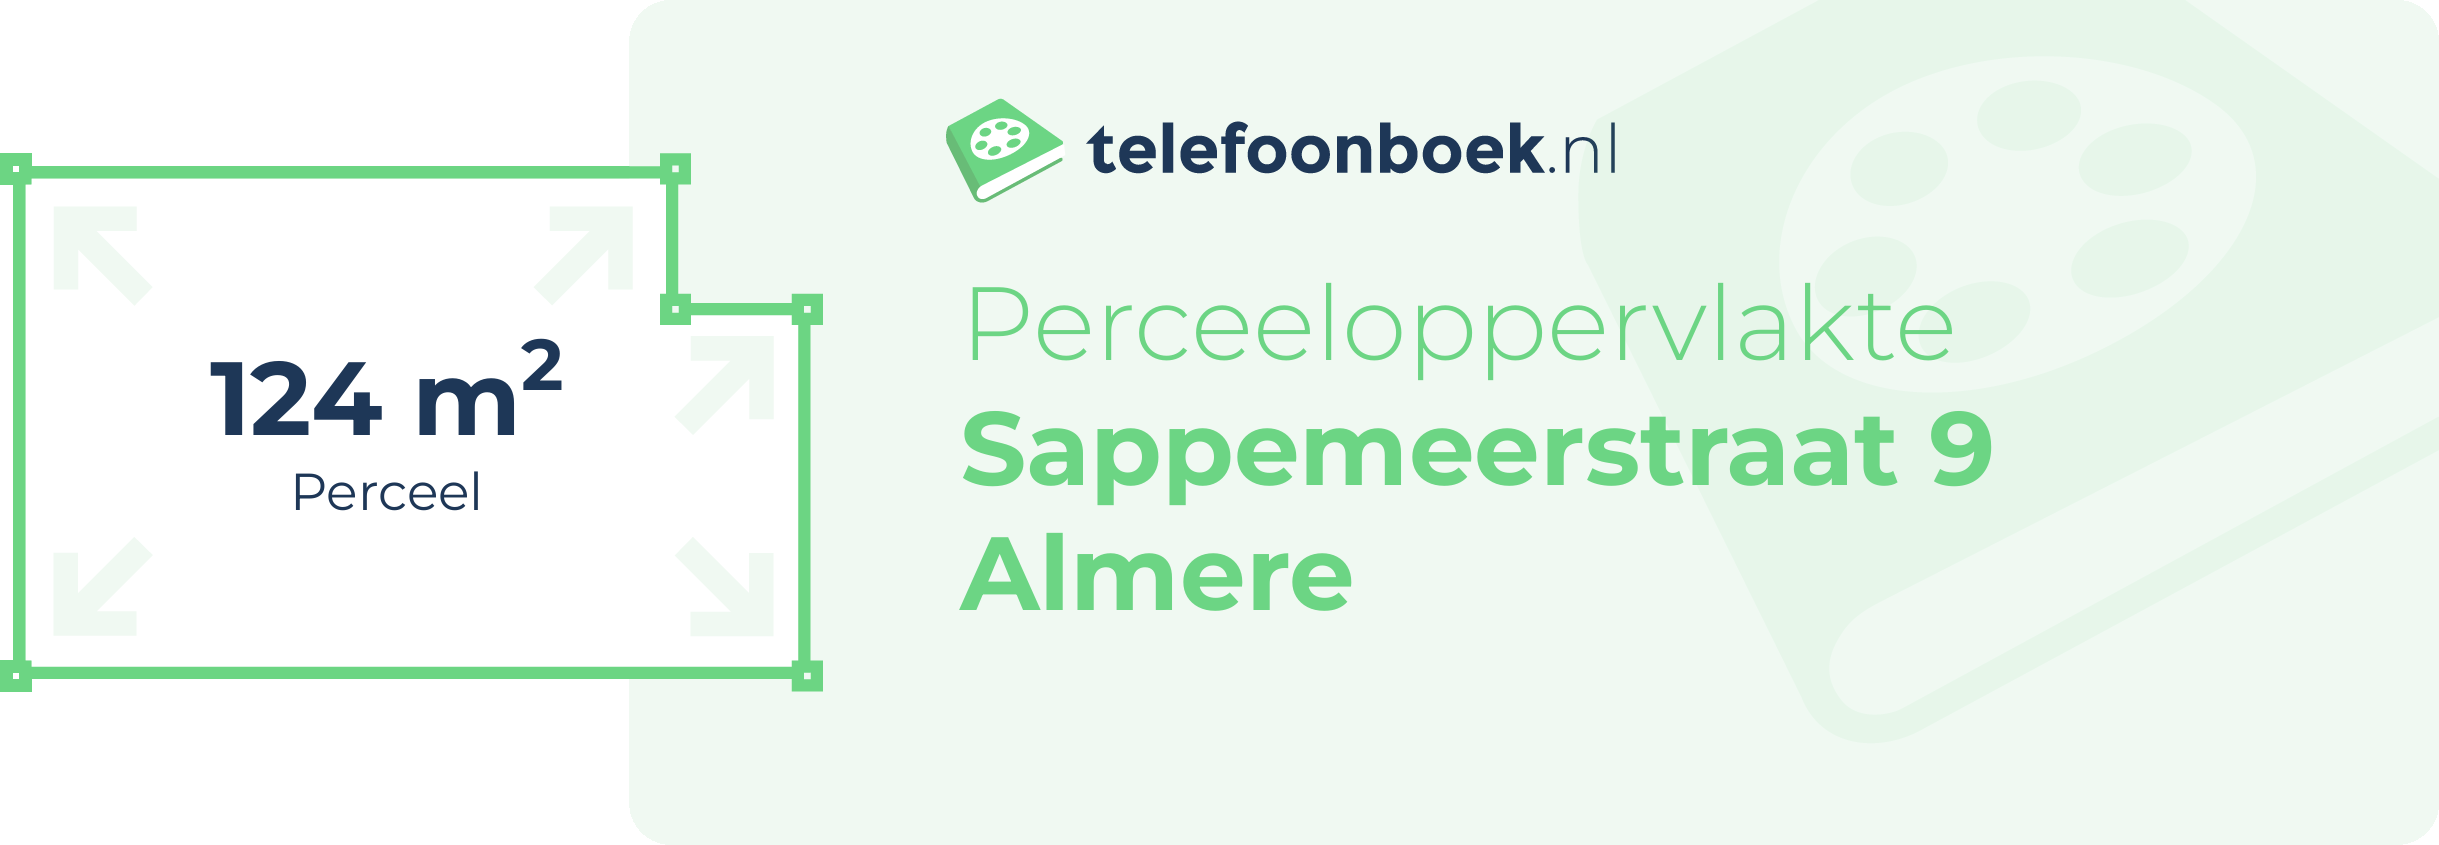 Perceeloppervlakte Sappemeerstraat 9 Almere